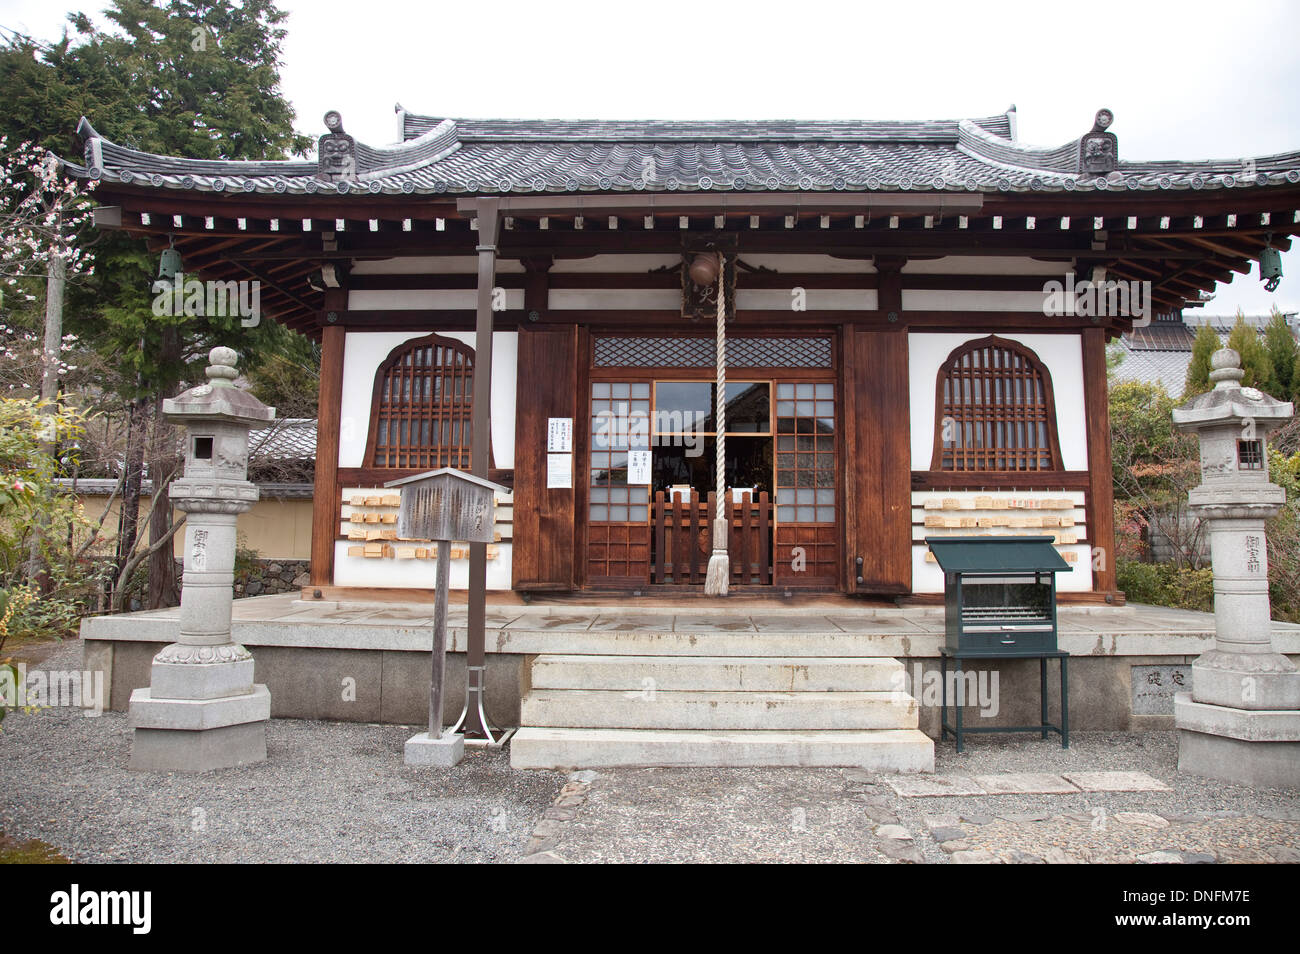 L'héritage culturel mondial, préfecture de Kyoto, Japon, Asie Banque D'Images